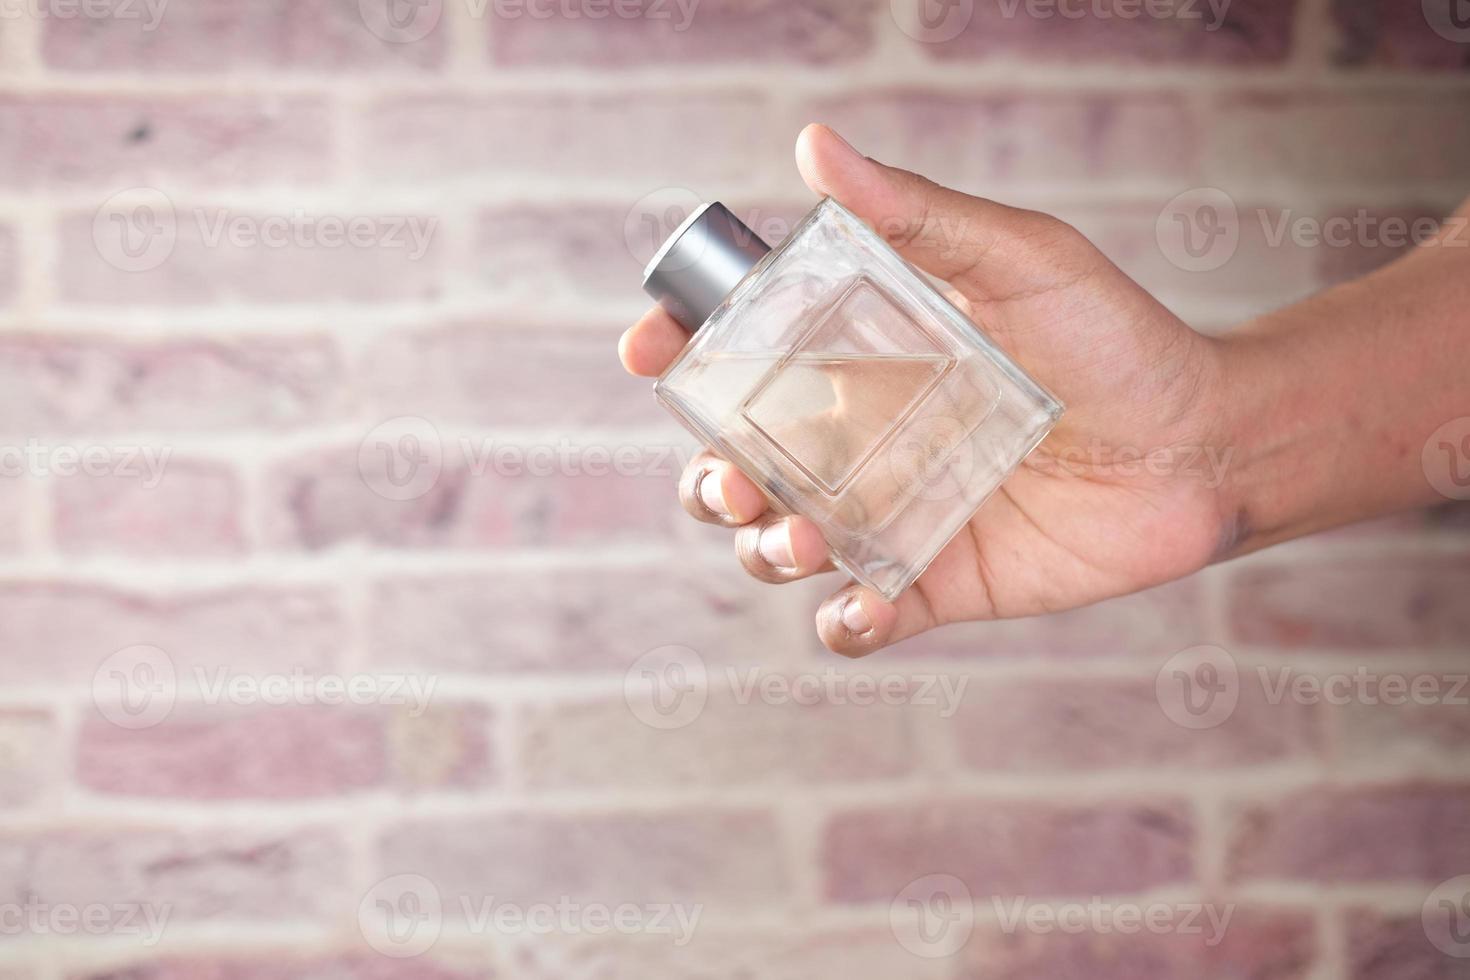 Asimiento de la mano de perfume contra el fondo de ladrillo foto